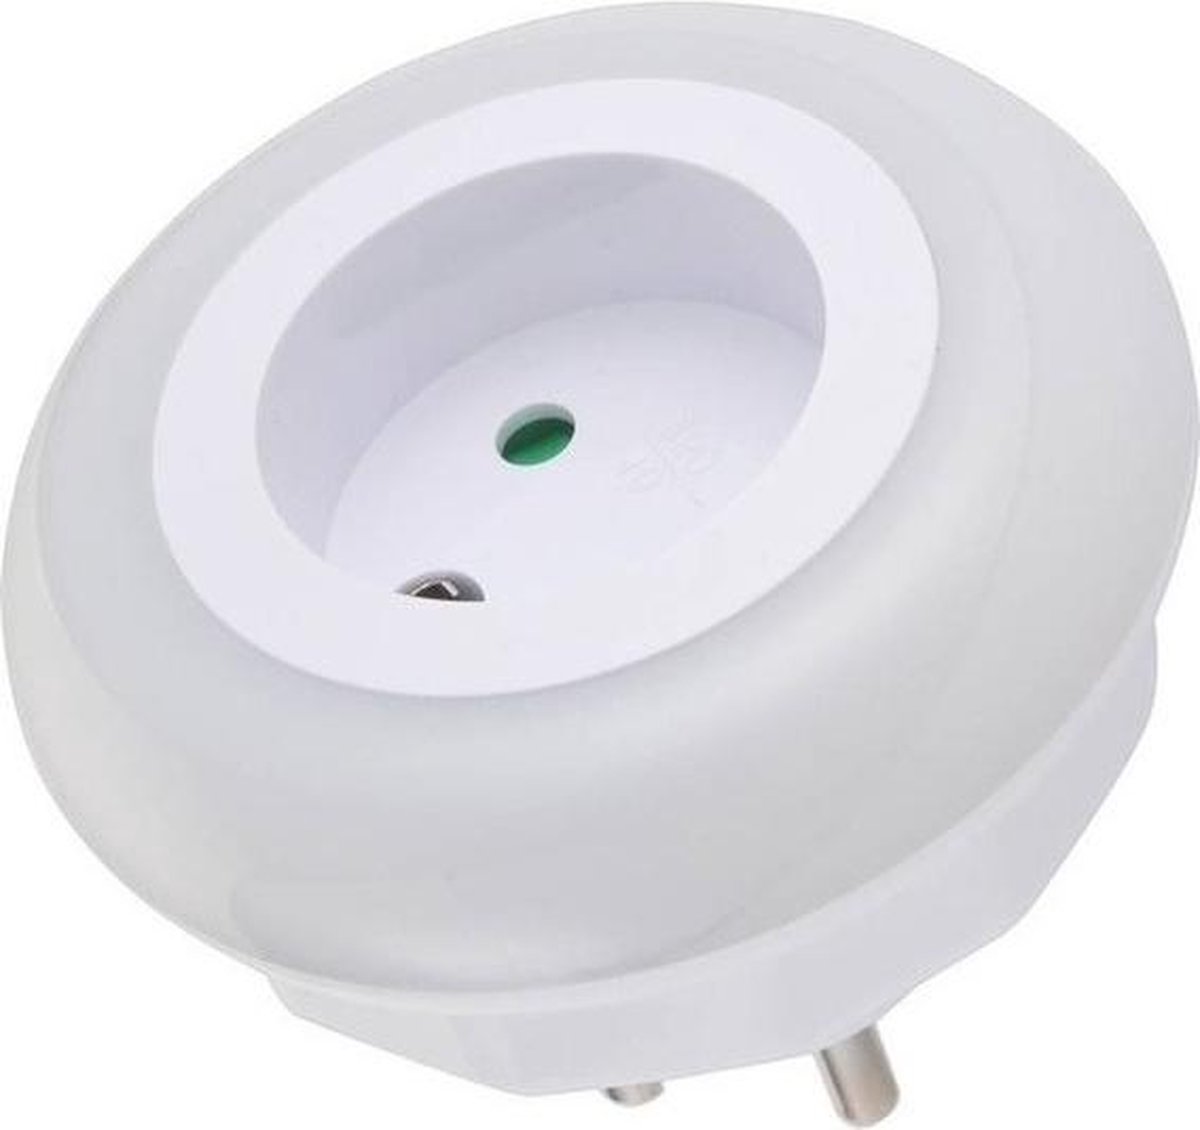 Stopcontact nachtlamp met LED sensor - nachtverlichting - Merkloos